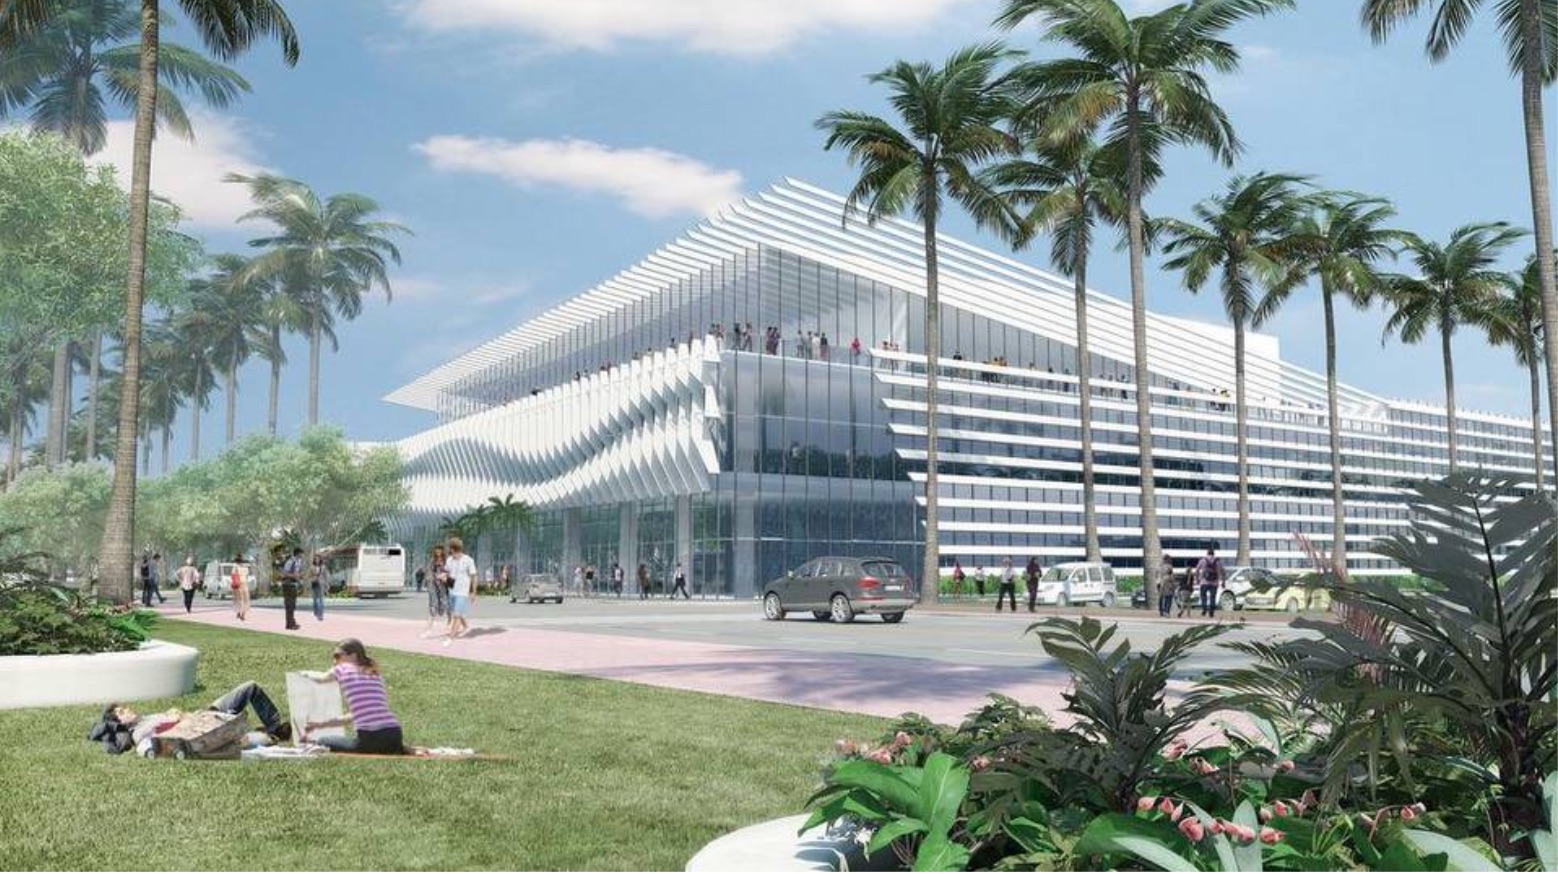 Miami Beach Convention Center: Will it break ground in December?